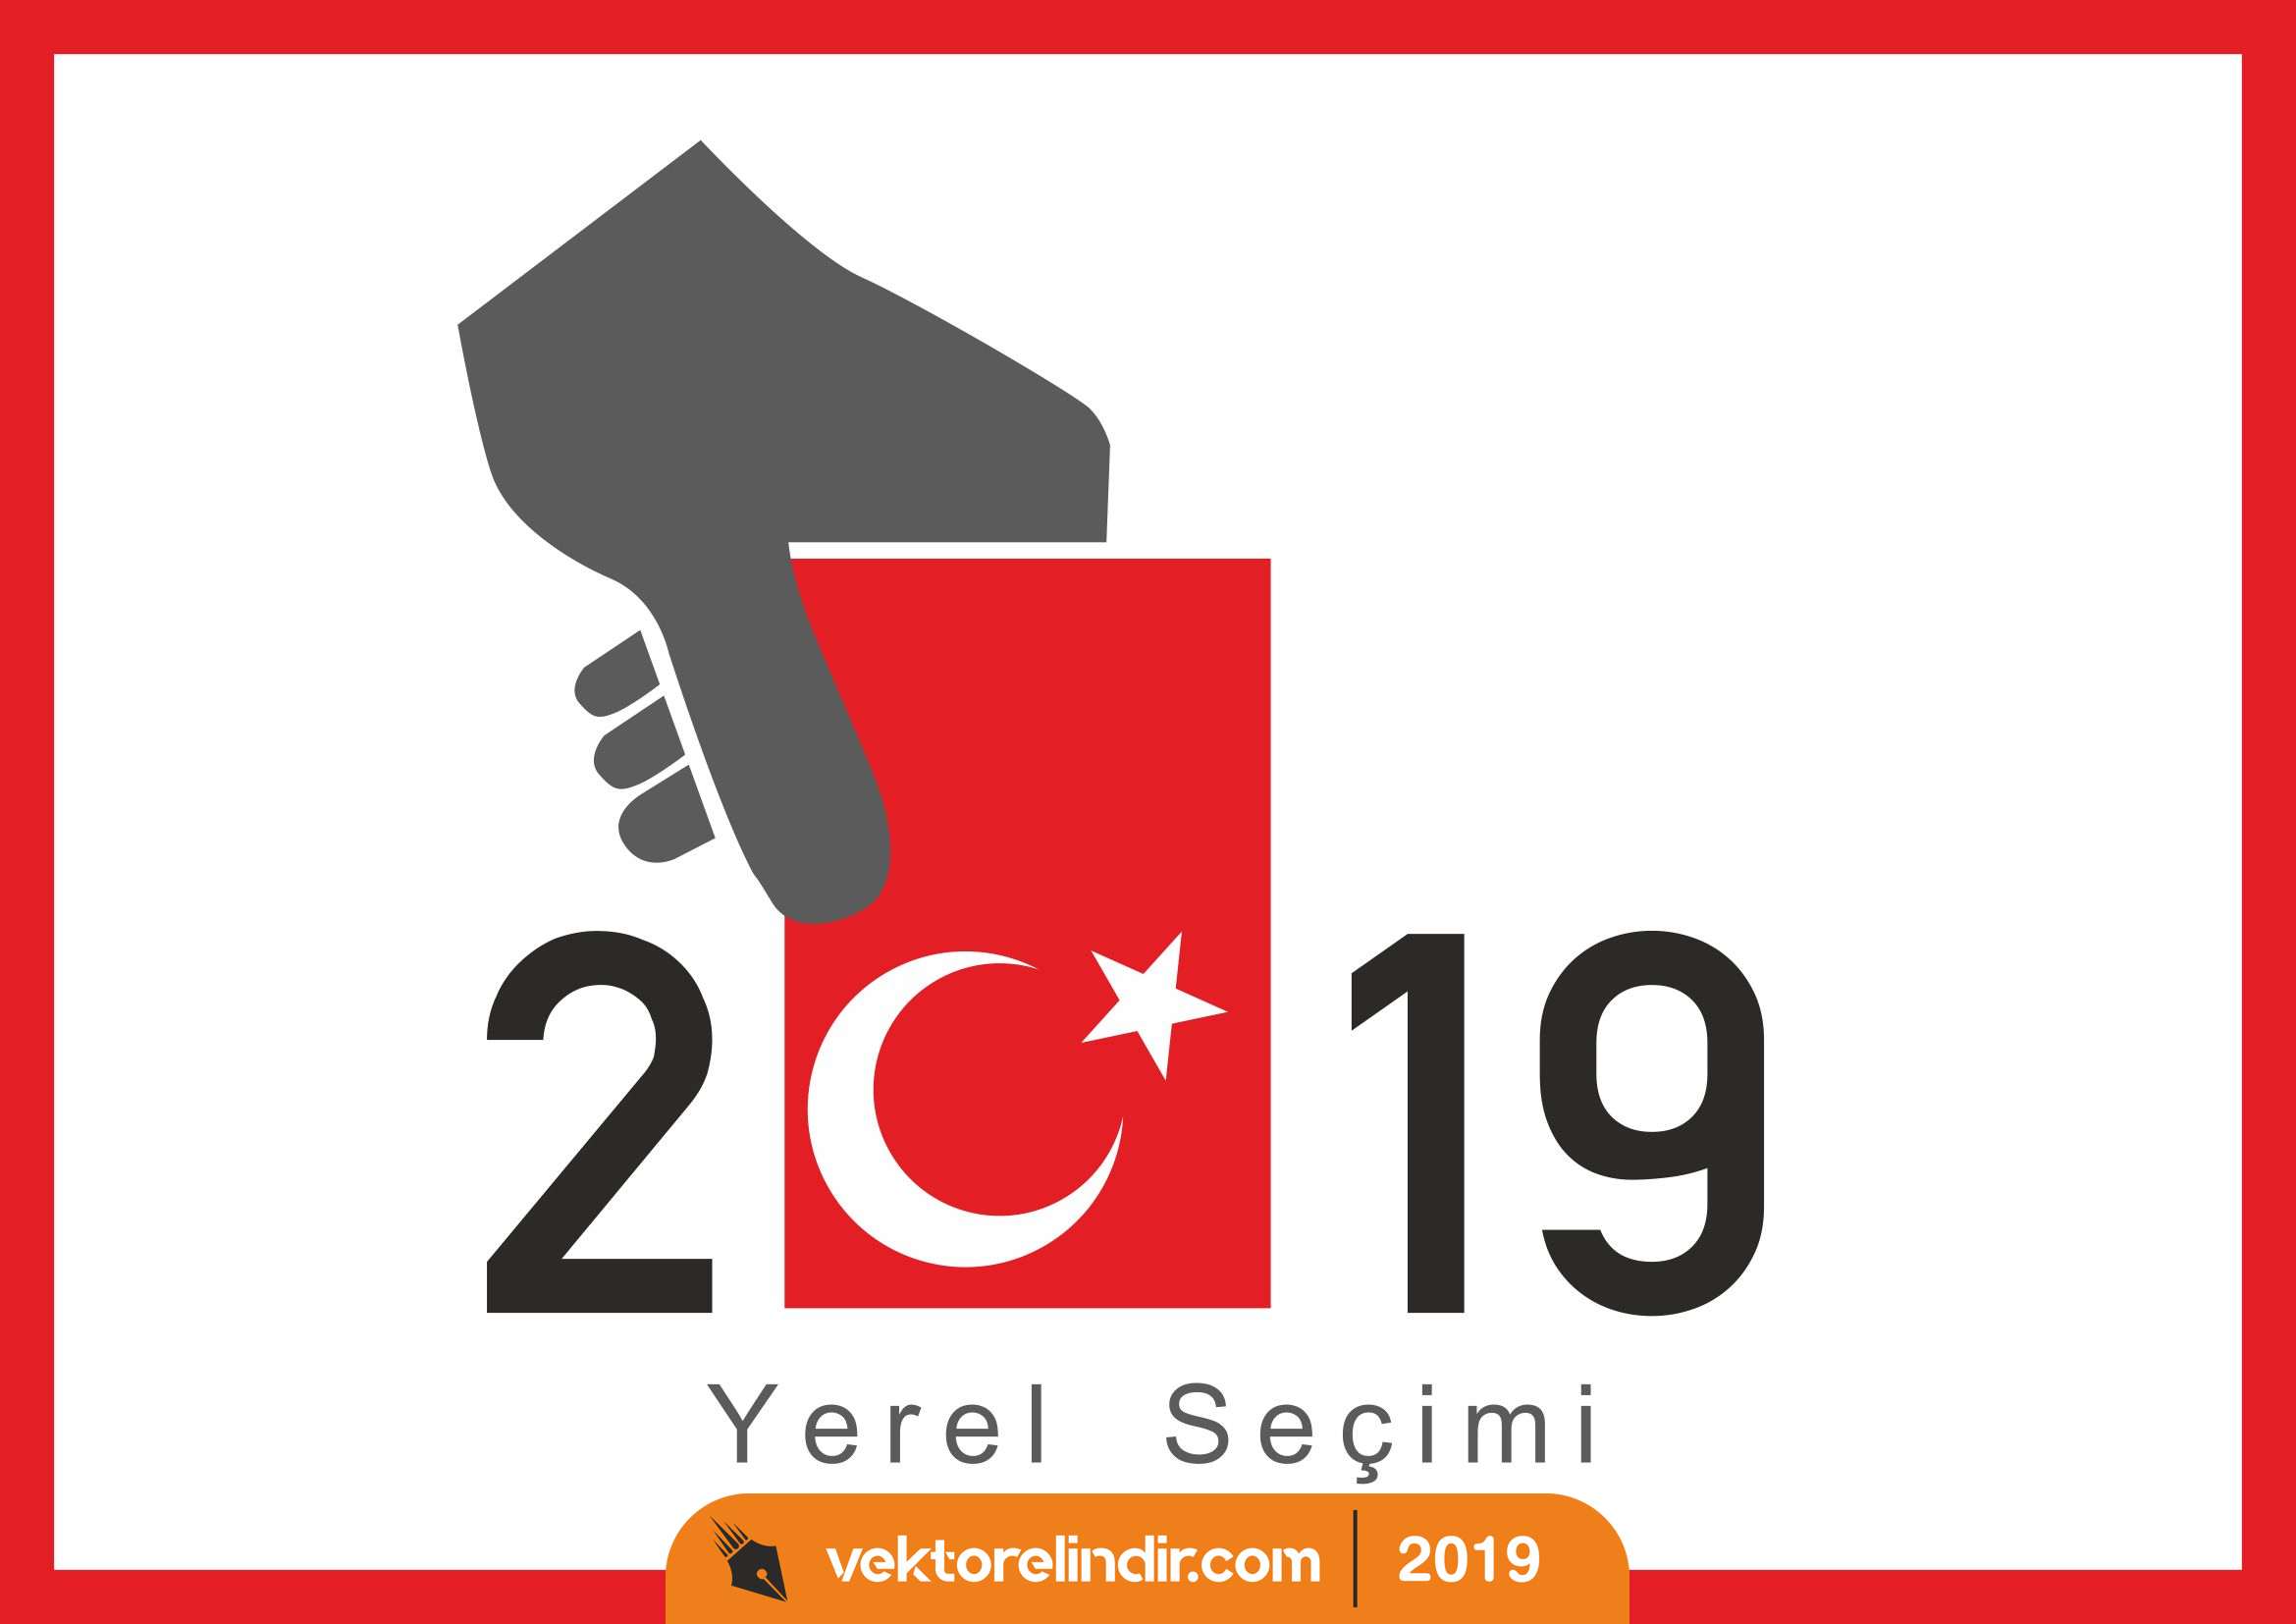 2019 Yerel Seçim Logo, Amblem, Anket.